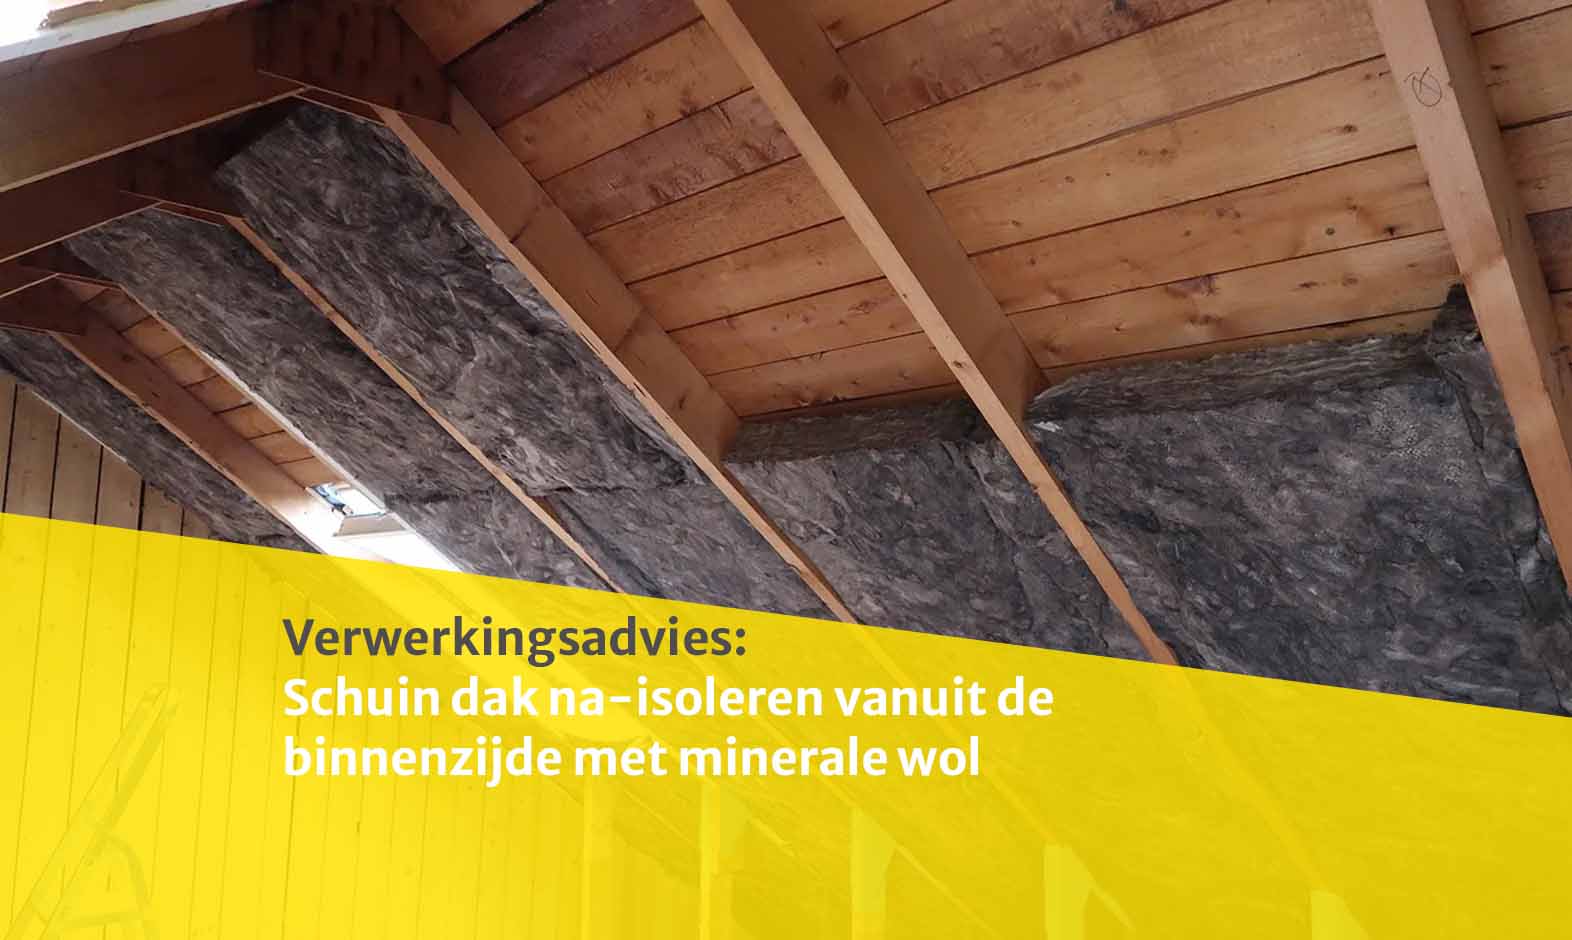 Schuin dak na-isoleren vanuit de binnenzijde  met minerale wol 